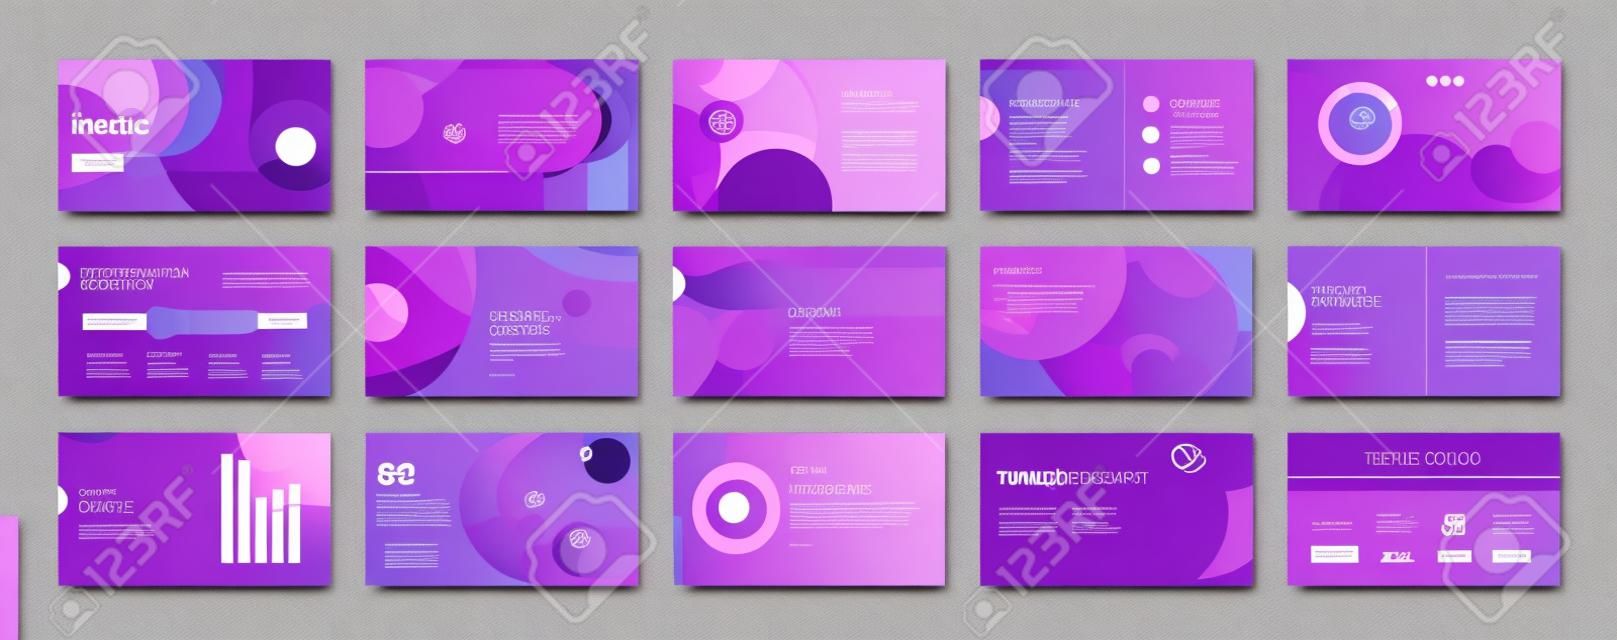 Geometryczne fioletowe szablony elementów prezentacji. infografiki wektorowe. do użytku w prezentacji, ulotce i ulotce, seo, marketingu, szablonie strony docelowej webinaru, projektowaniu stron internetowych, banerze.